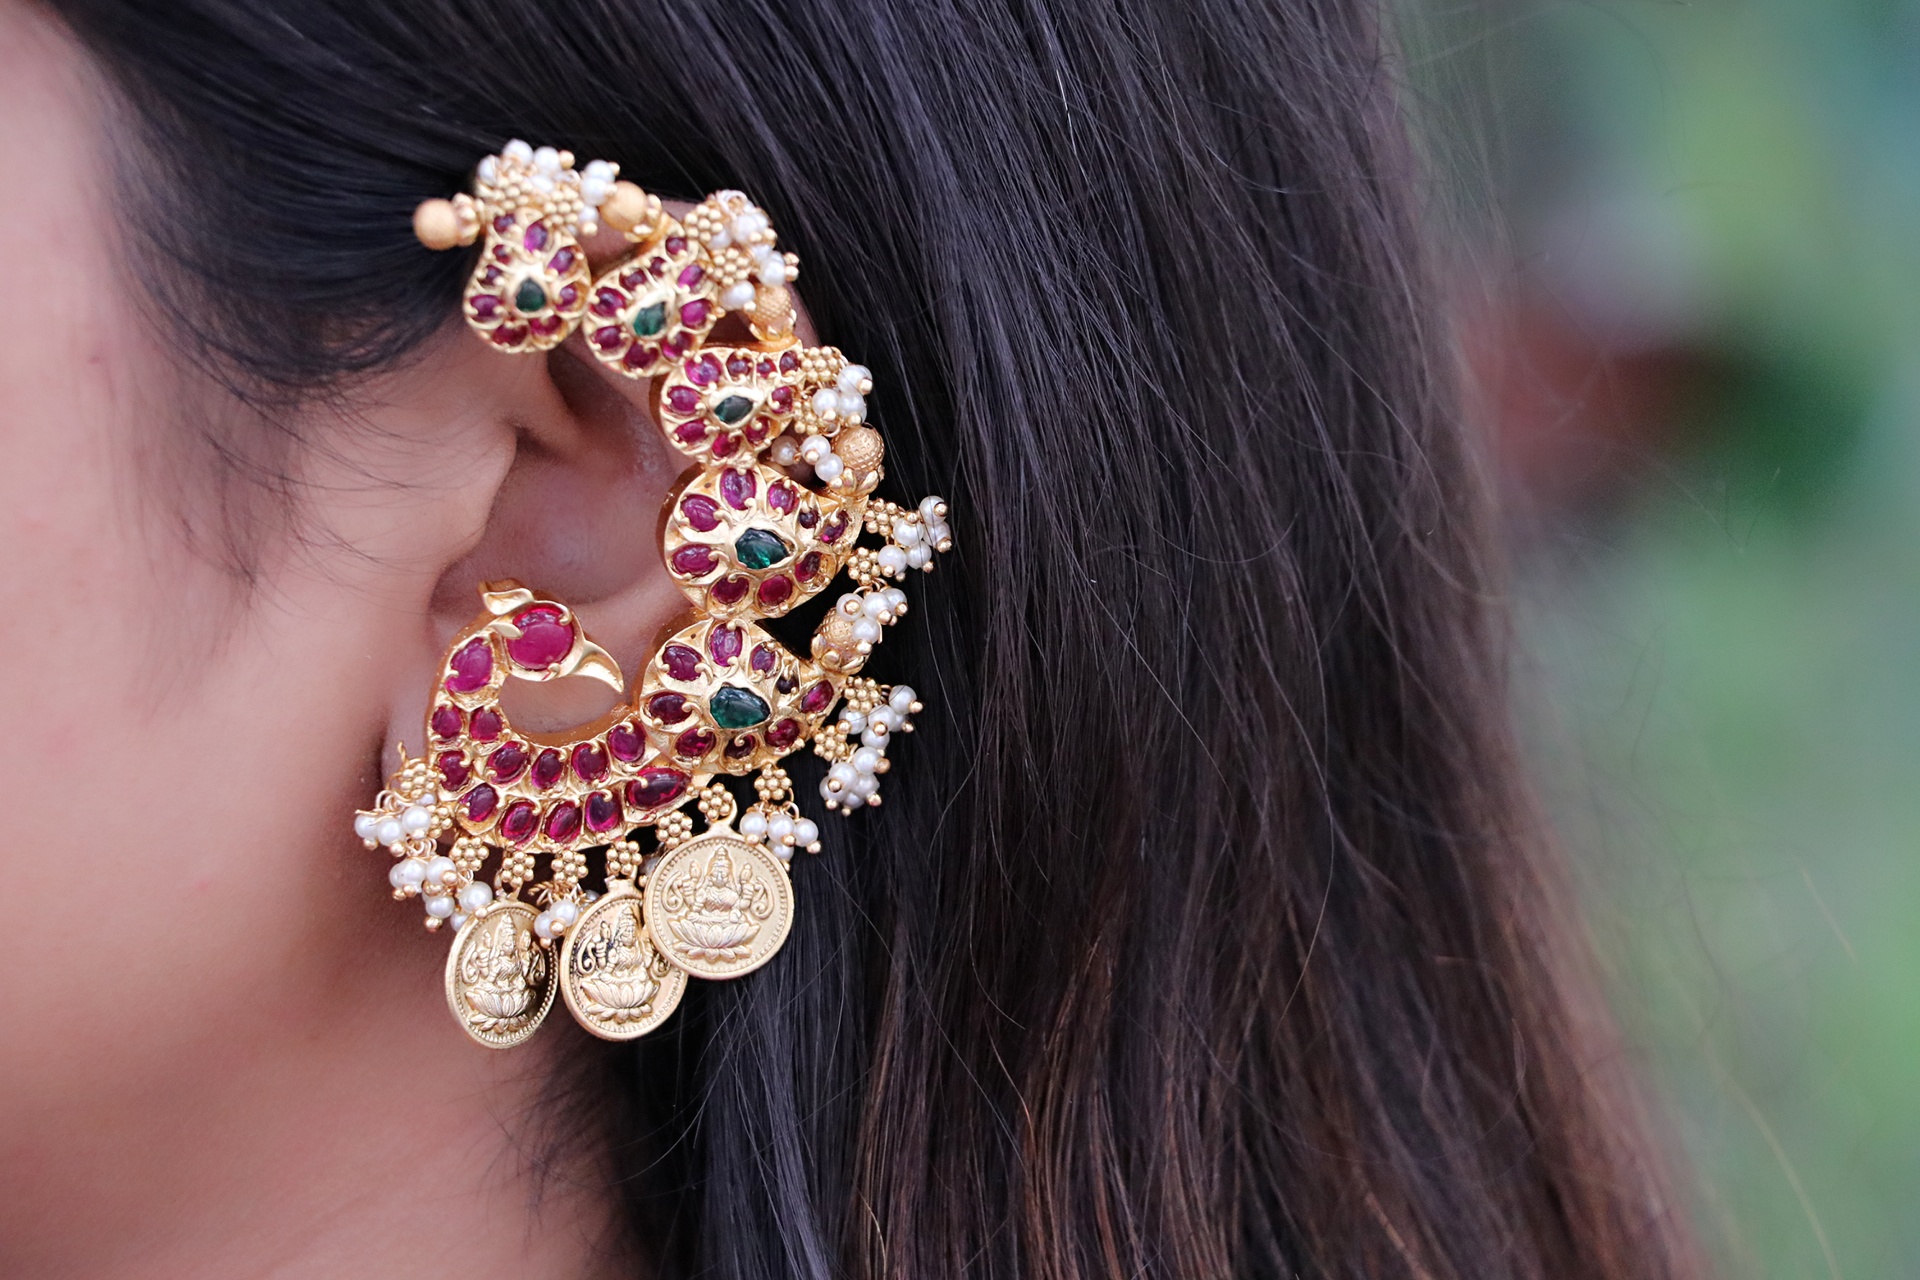 Aggregate 152+ full ear earrings in gold super hot - seven.edu.vn